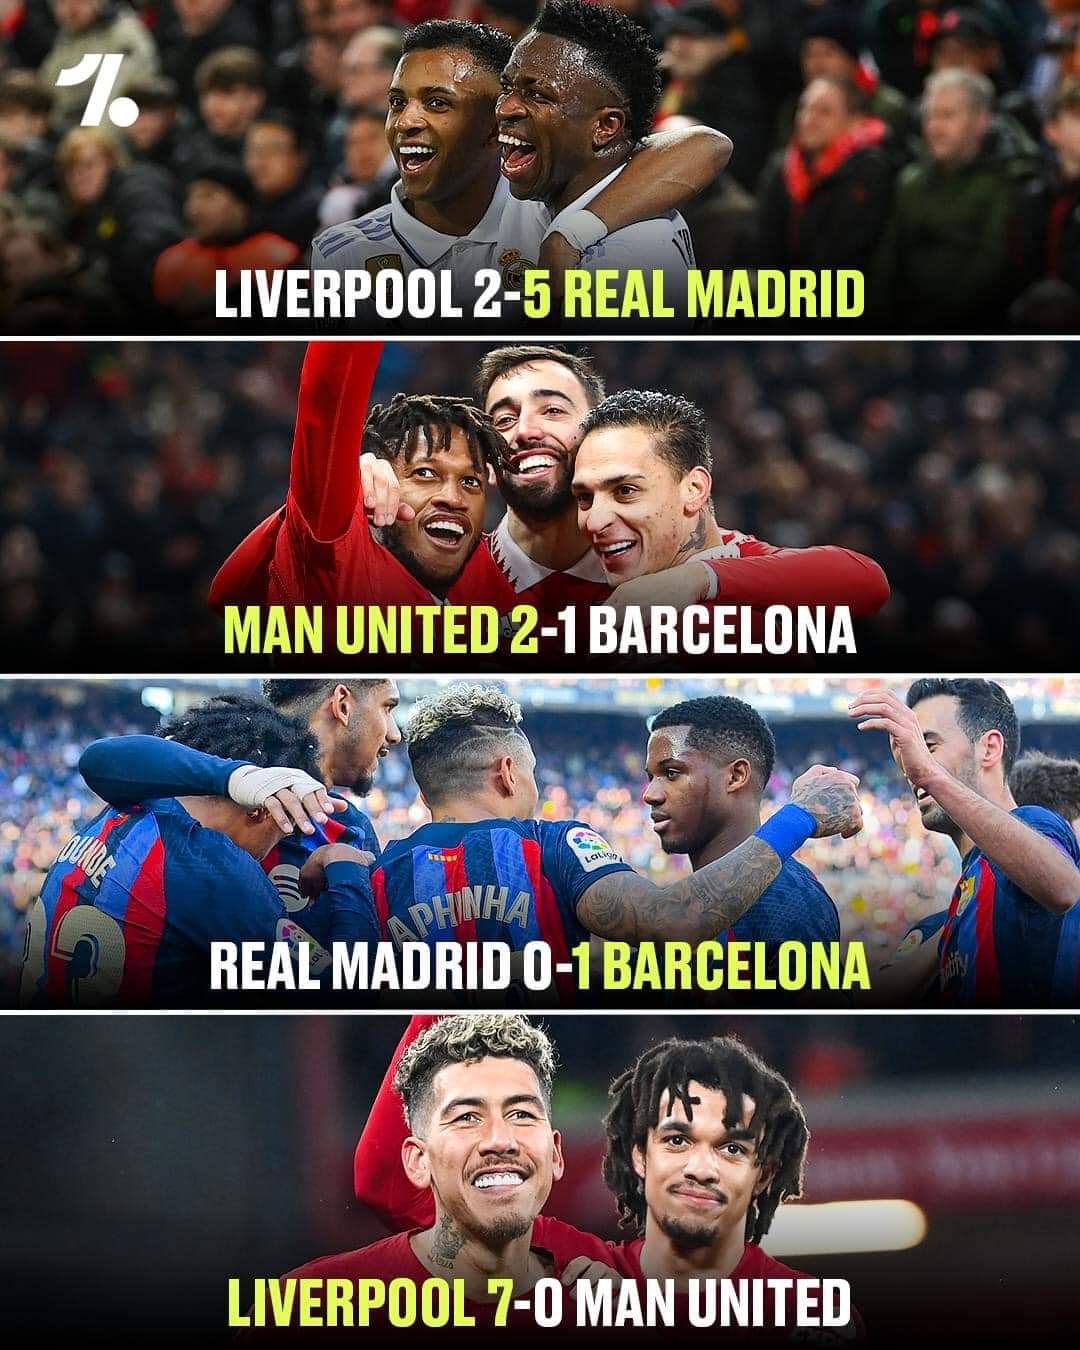 🔴Man Utd hành Barca ở C2
🔵Barca về hành Real Madrid ở La Liga
⚪️Real Madrid hành Liverpool ở C1
🔴Liverpool về hành Man Utd ở EPL
😅Một vòng luẩn quẩn⚽️